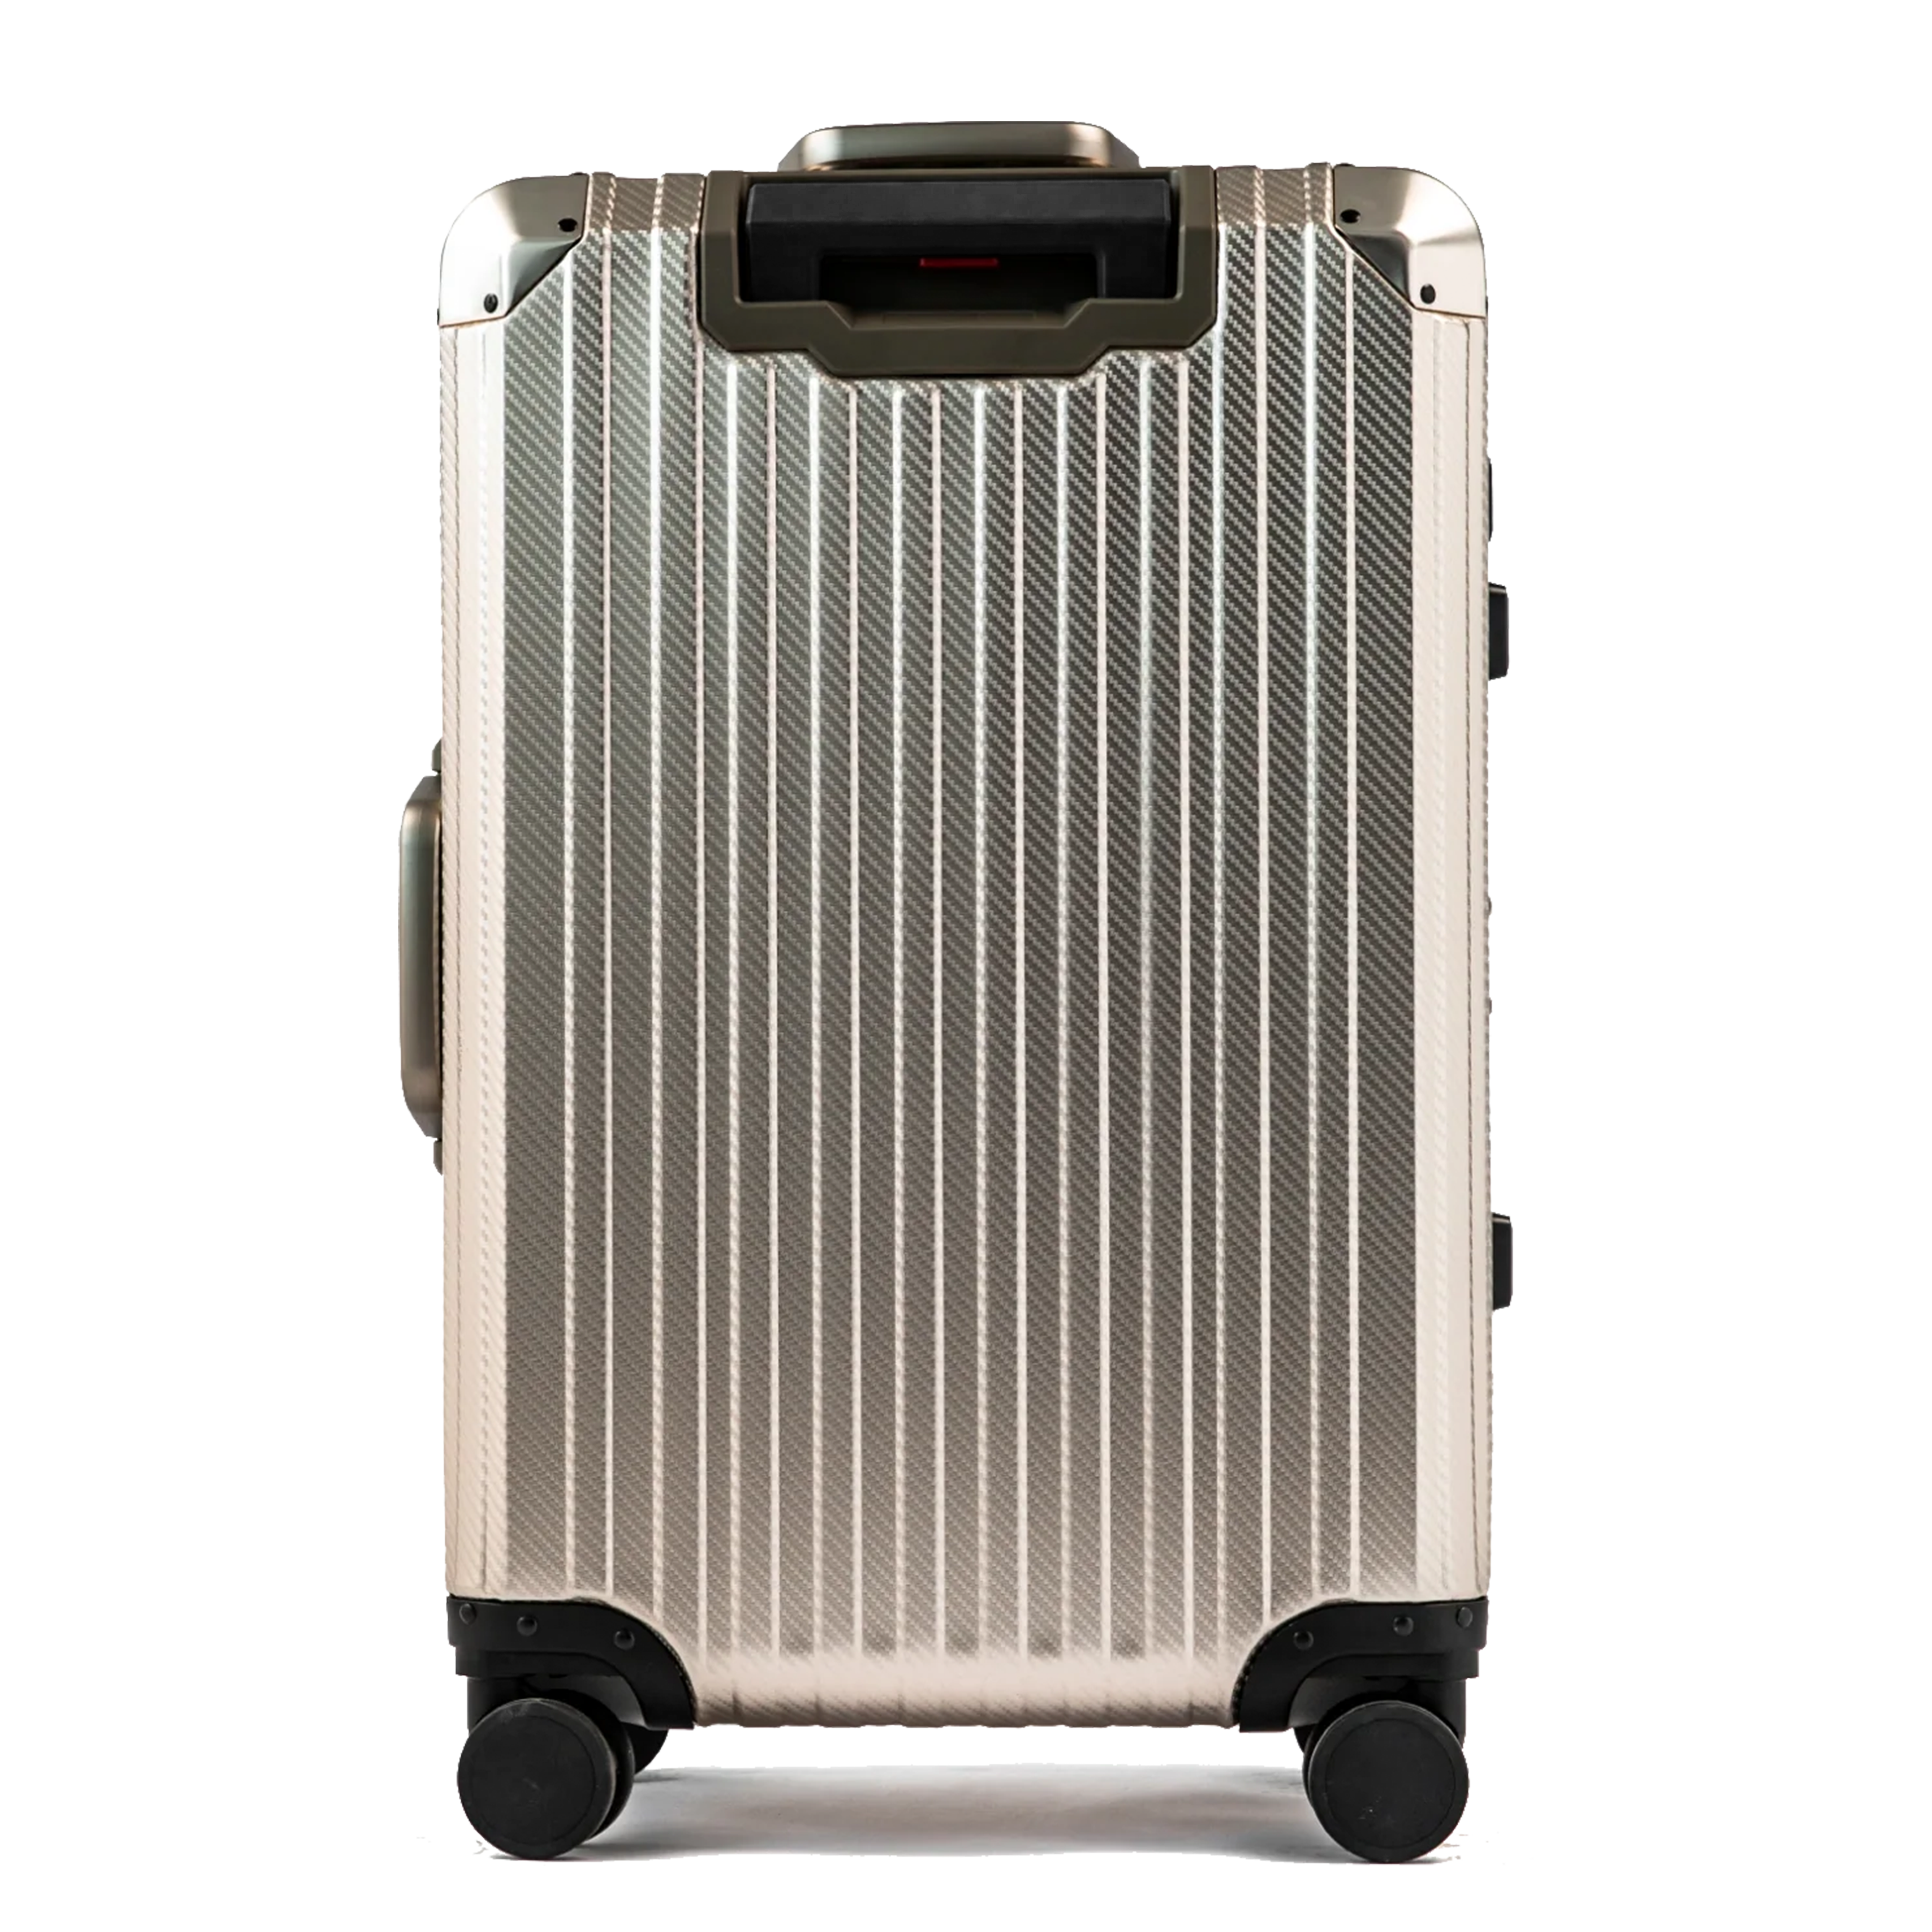 TREK Aluminum Suitcase Champagne